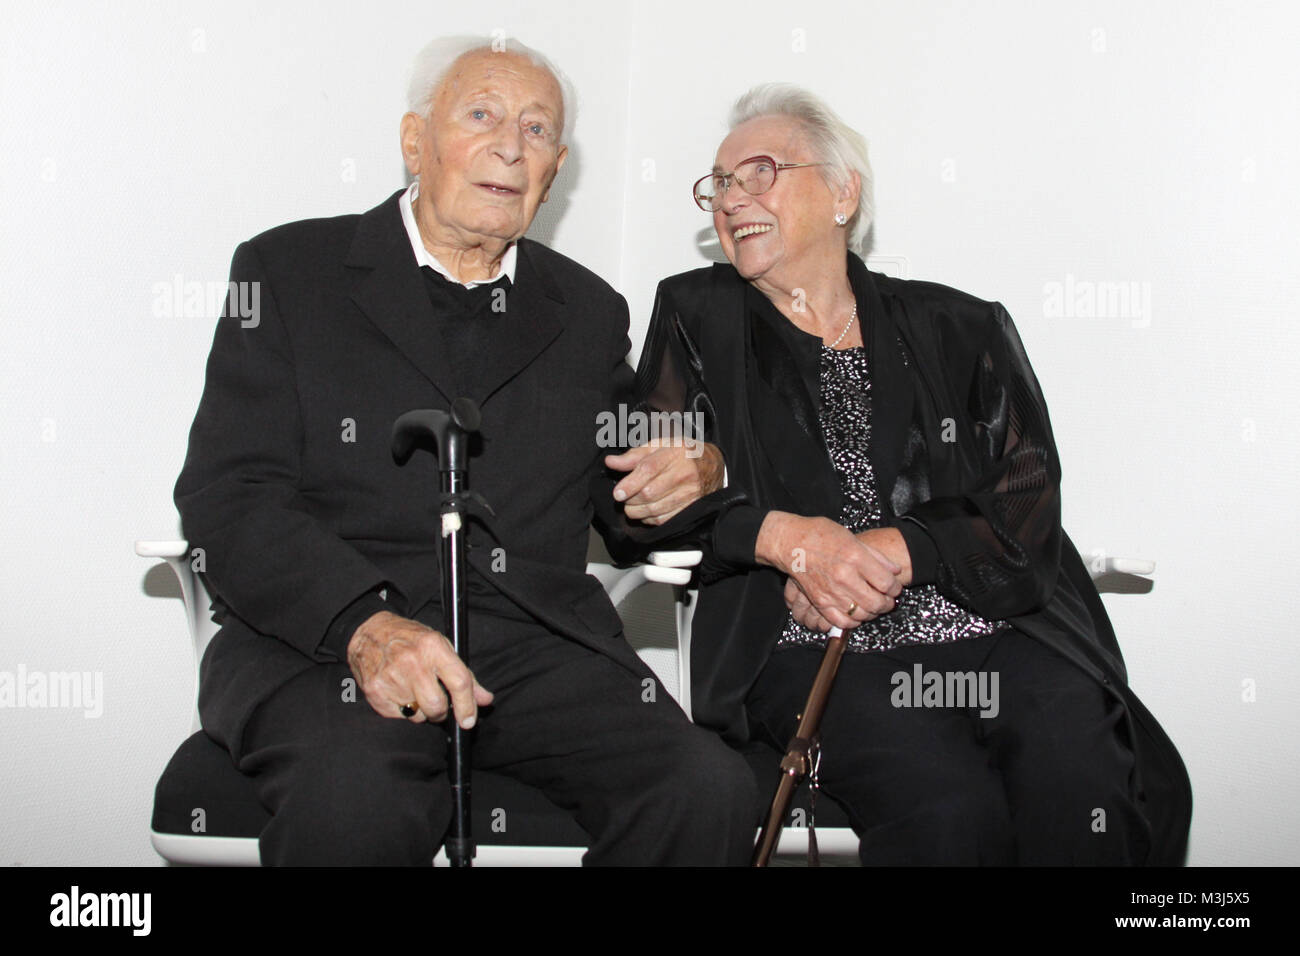 Lanz, Aufzeichnung, 02.11.2009, Auf dem Traumschiff haben sich die damals 88-jaehrige Erna Breitsprecher und der 91-jaehrige Otto Punzel und lieben kennen gelernt. Guerra das neun vor Jahren. Jetzt hat sich das Paar das Jawort gegeben. Foto de stock